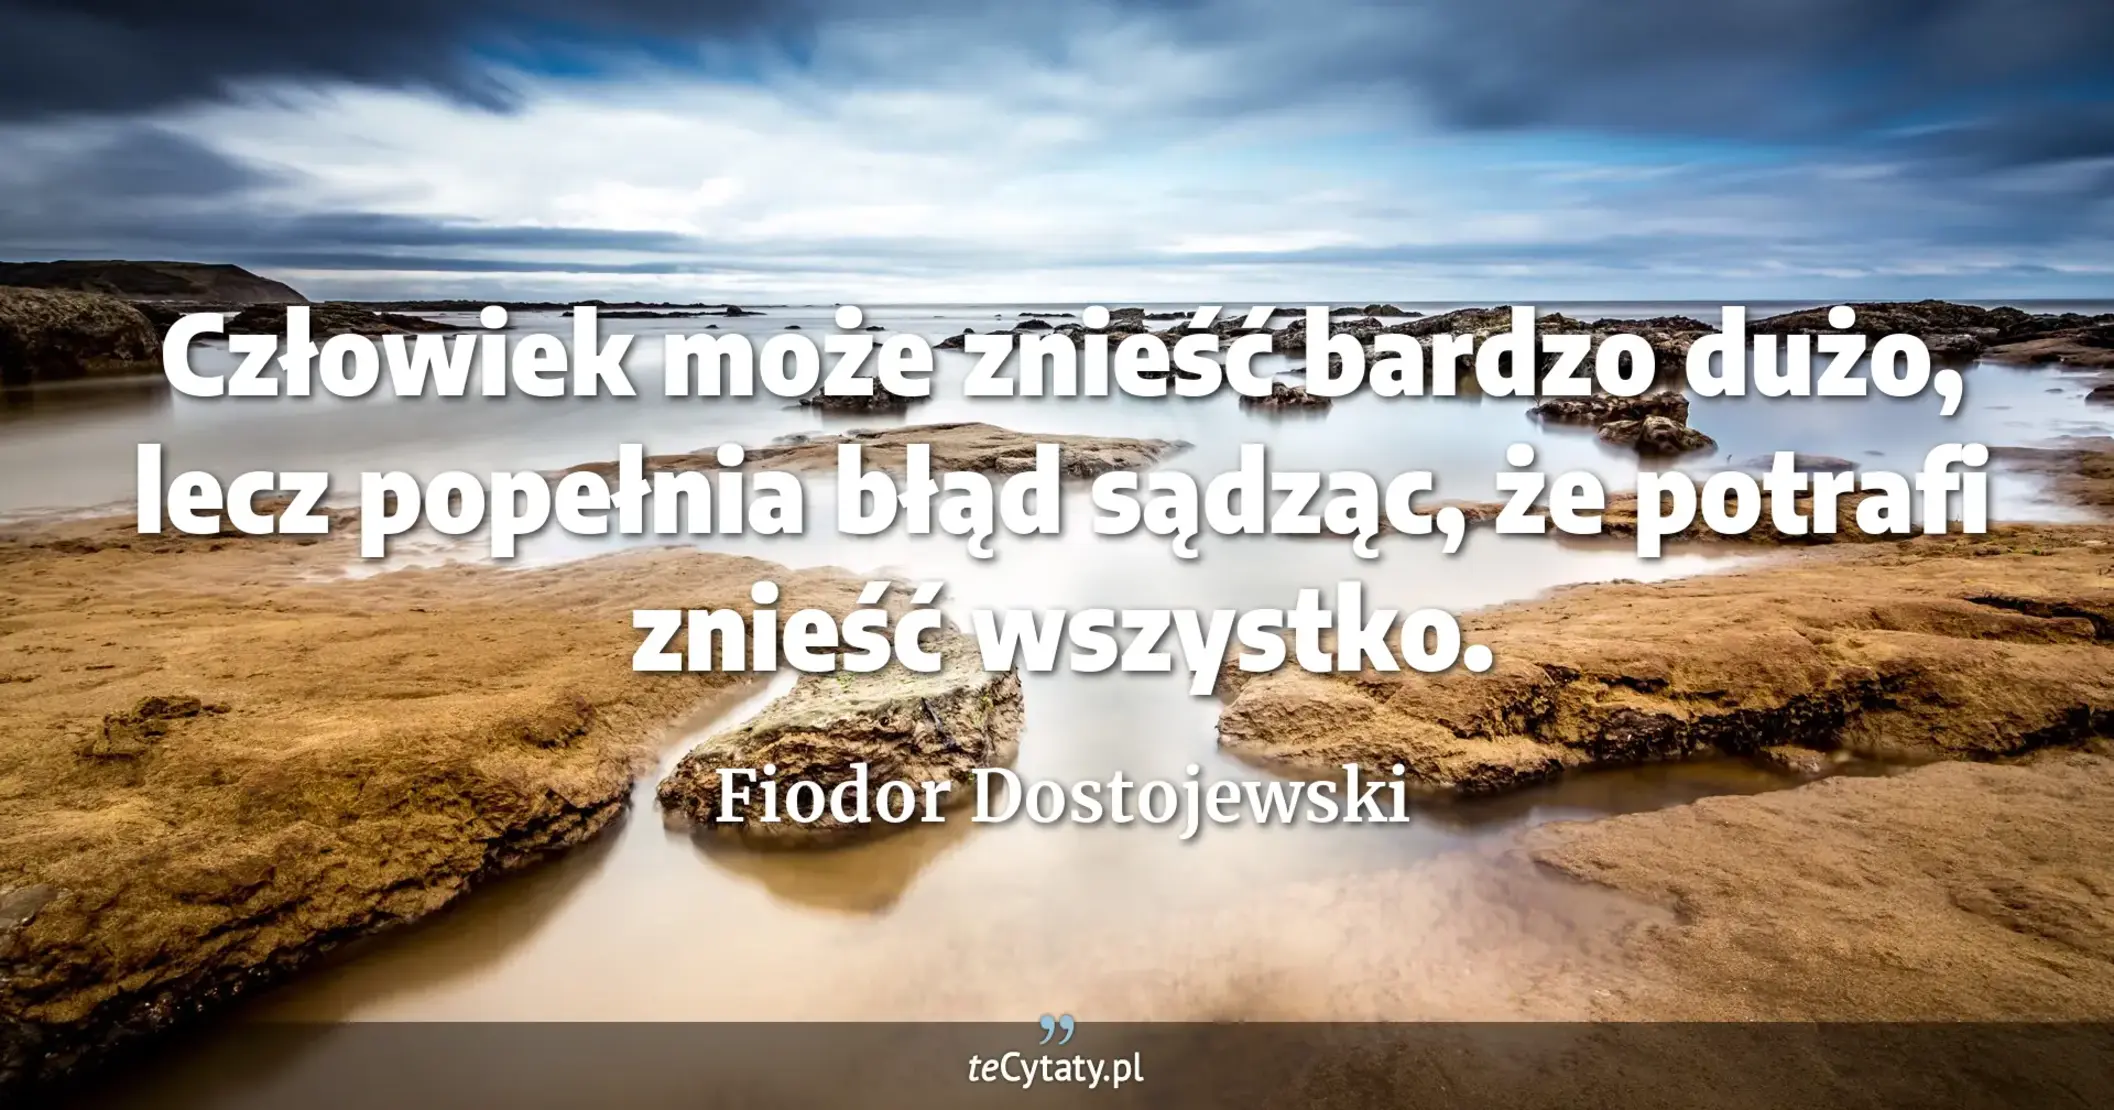 Człowiek może znieść bardzo dużo, lecz popełnia błąd sądząc, że potrafi znieść wszystko. - Fiodor Dostojewski